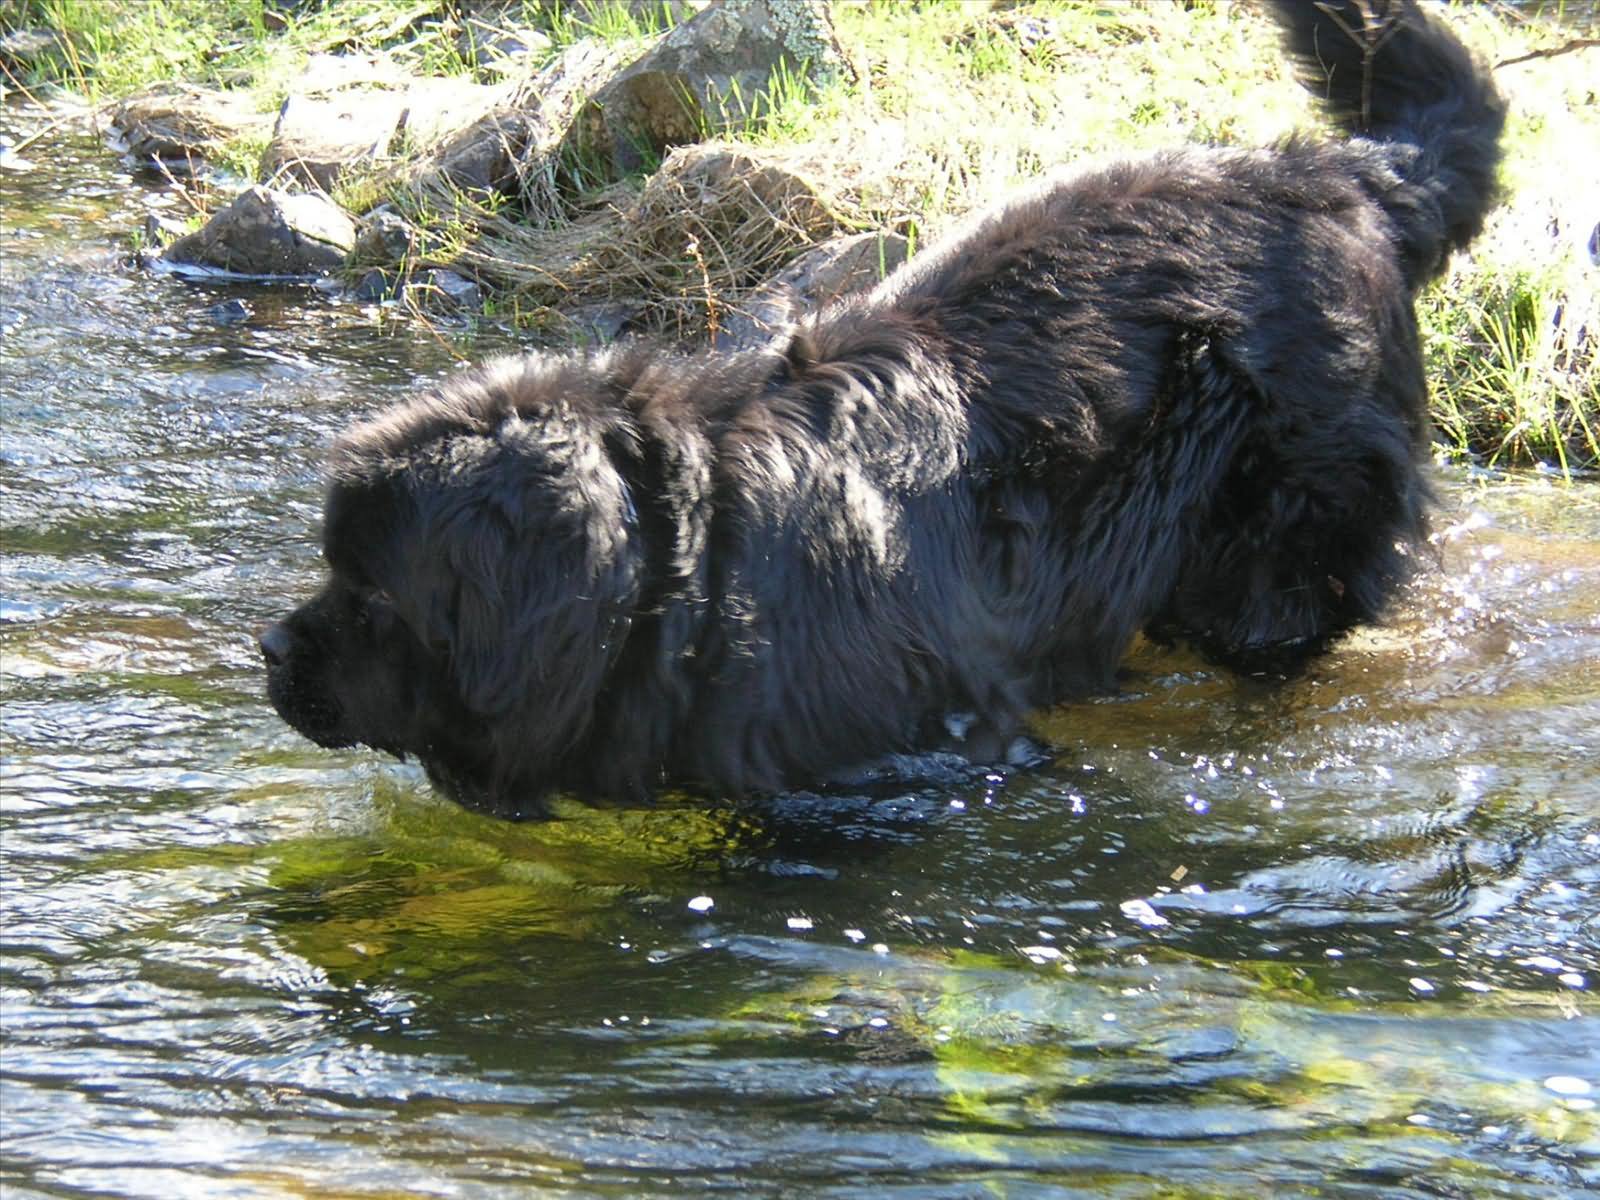 Newfoundland Dog Going For a Swim